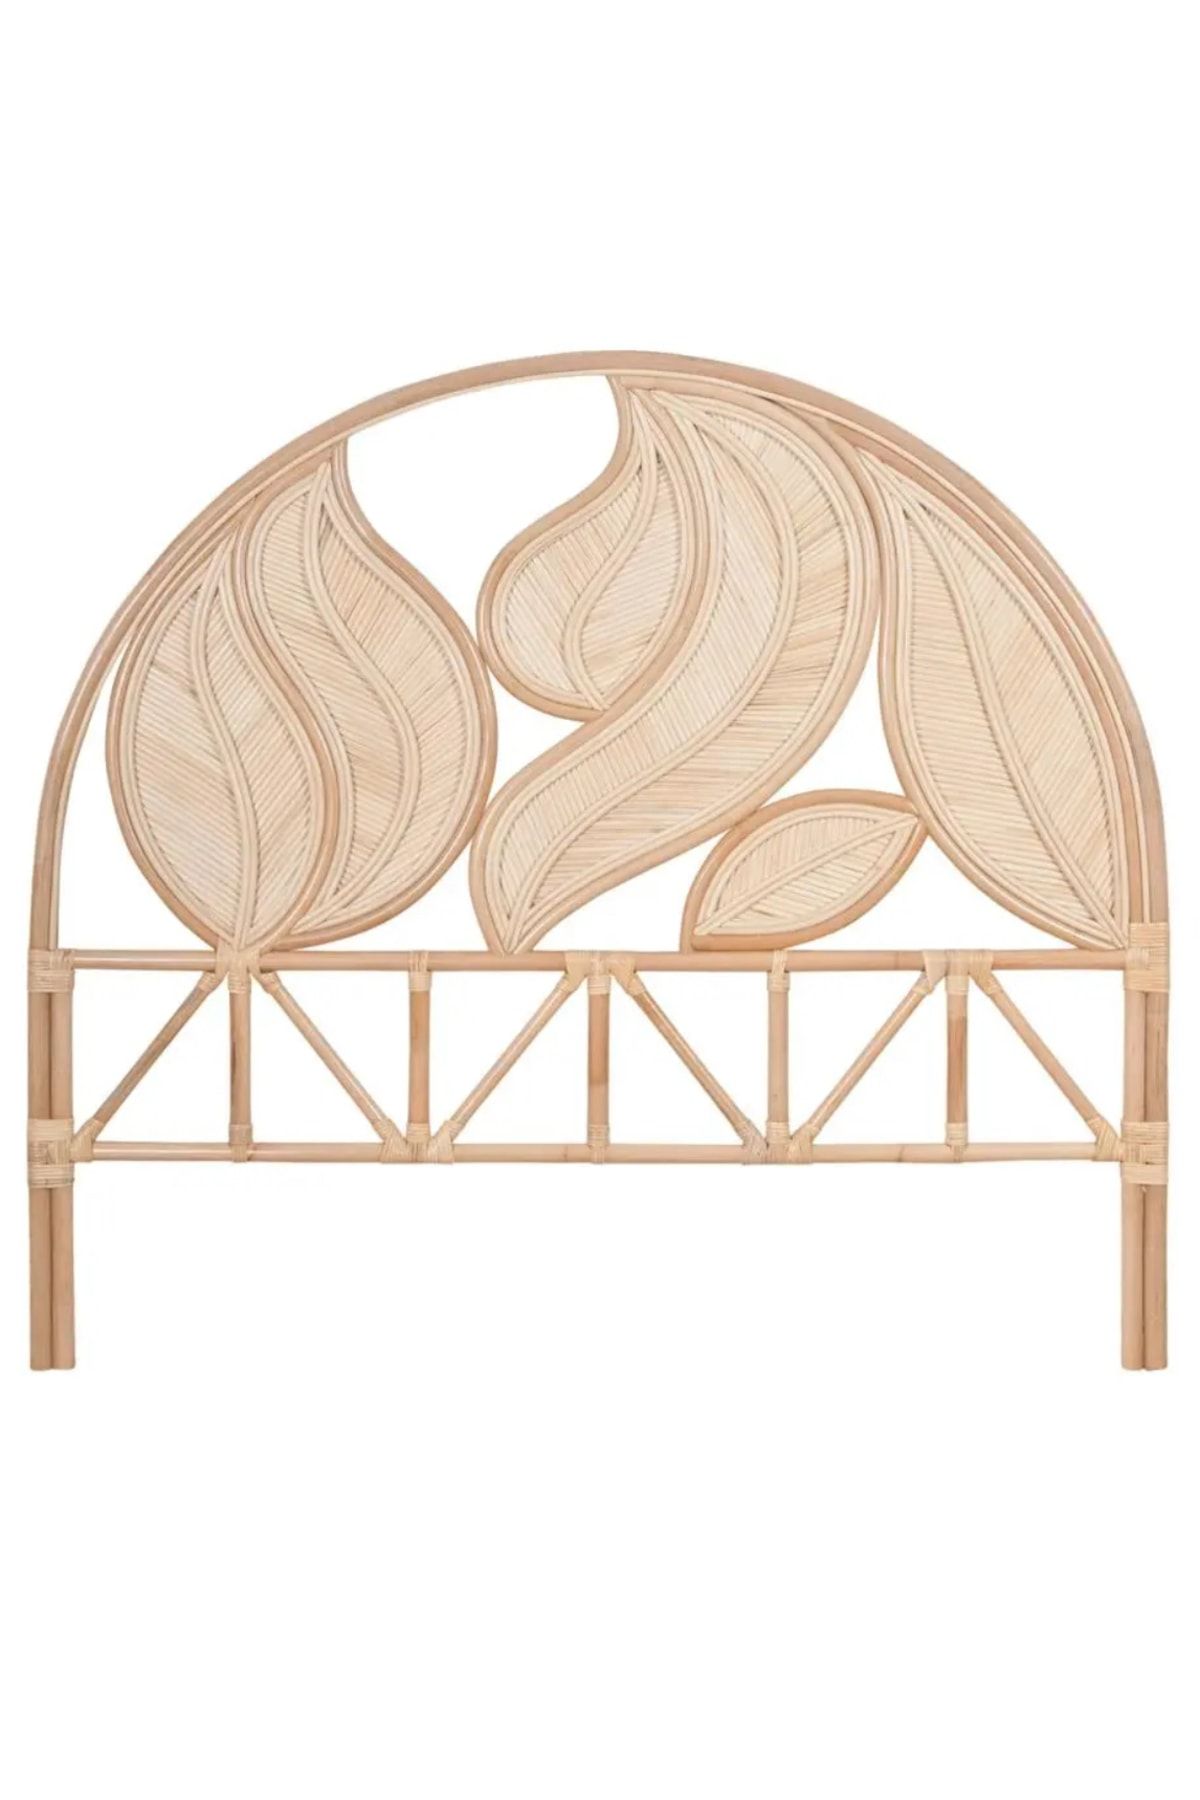 bamlike Bambu Yaprak Modeli Yatak Başlığı